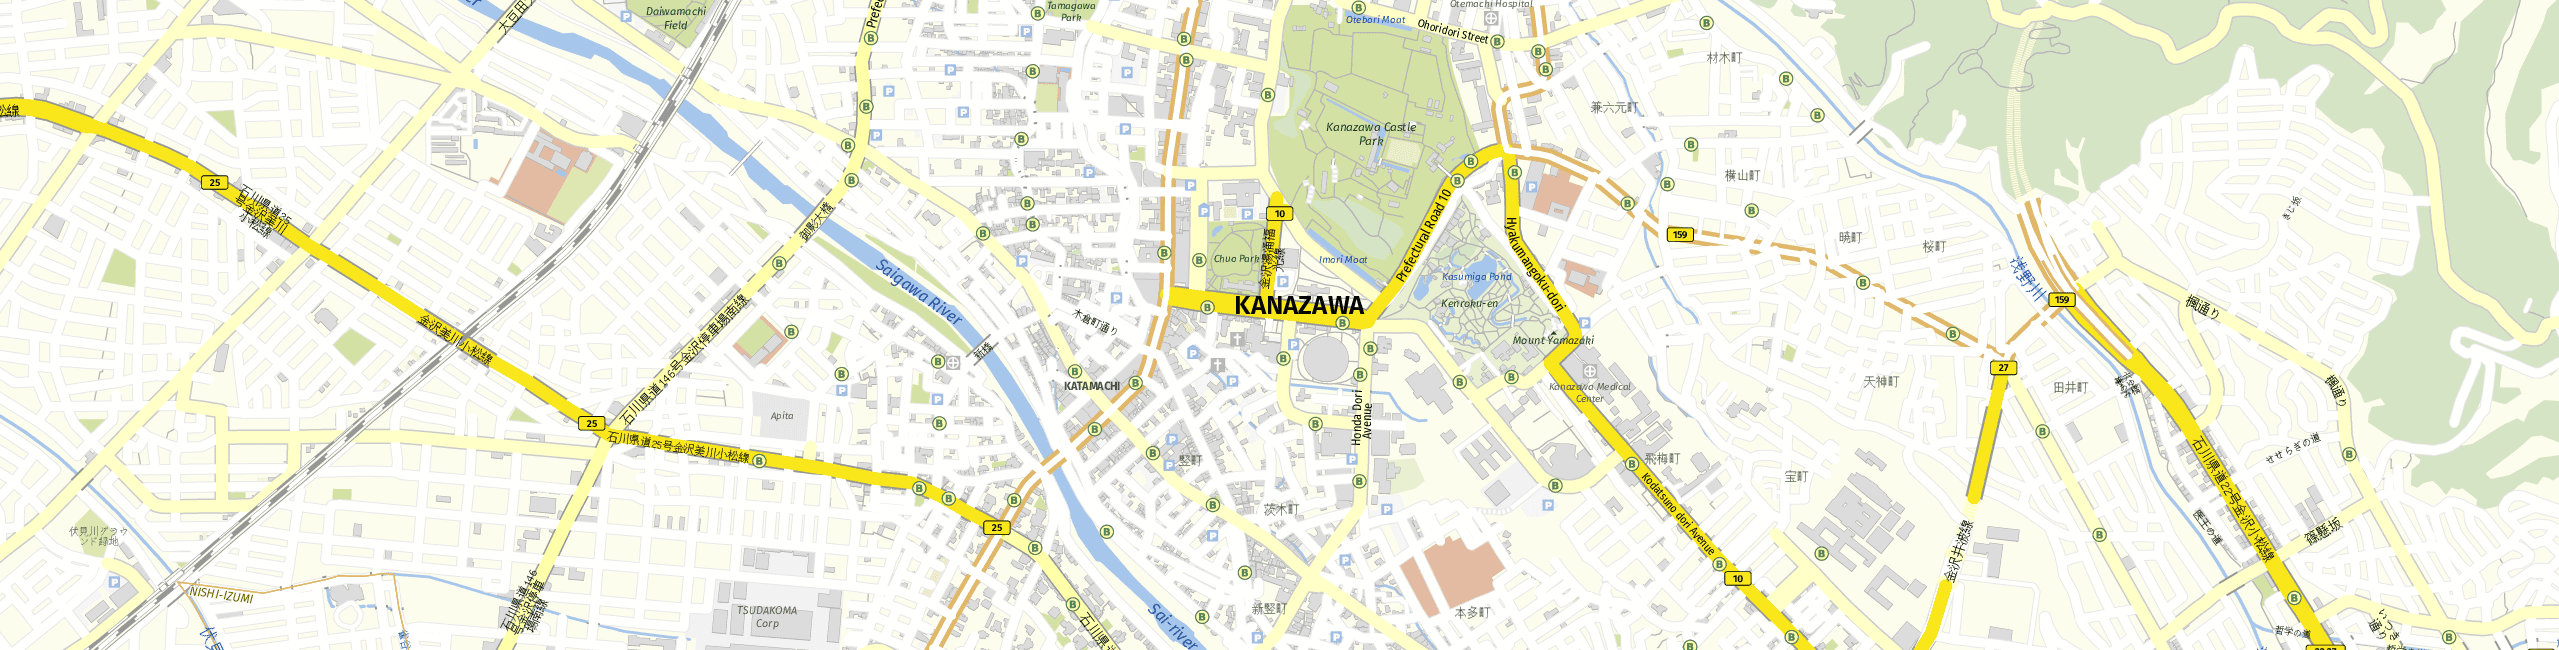 Stadtplan Kanazawa zum Downloaden.